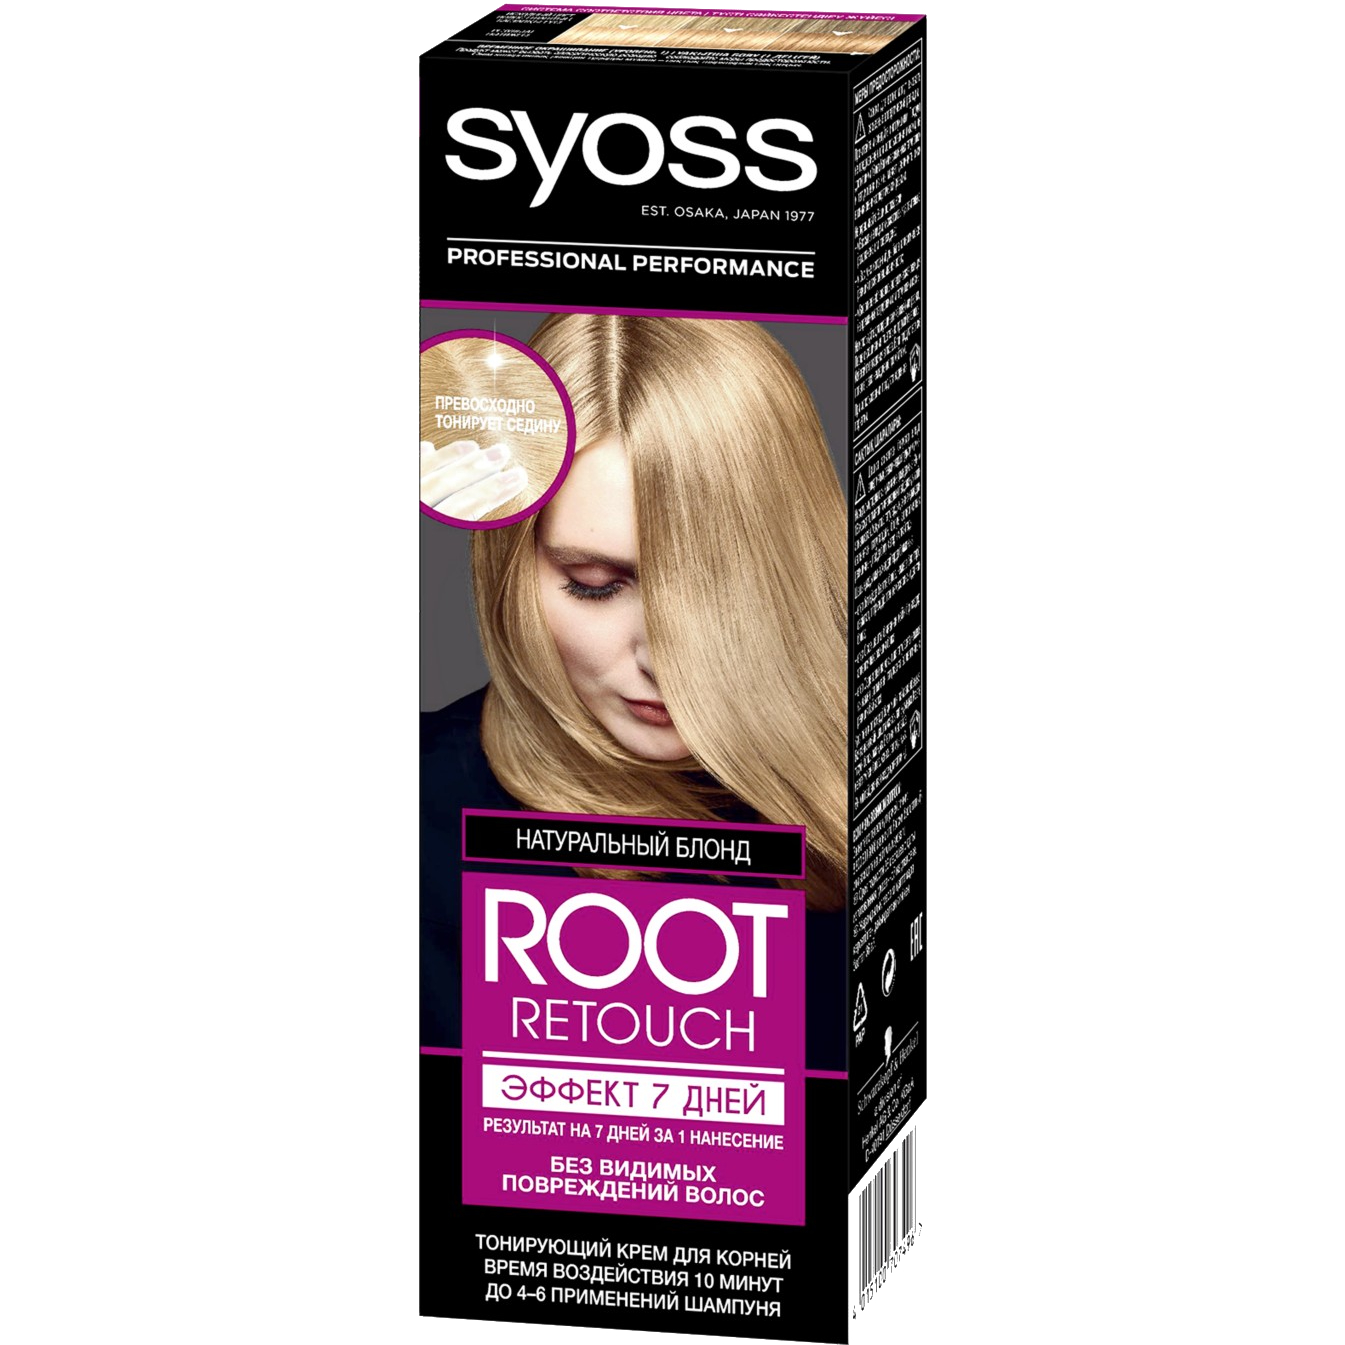 Крем для волос Syoss Root Retoucher тонирующий Эффект 7 дней оттенок 8.0 Натуральный Блонд, 60 мл вв крем blur тонирующий для лица с текстурой кашемира универсальный 50 мл